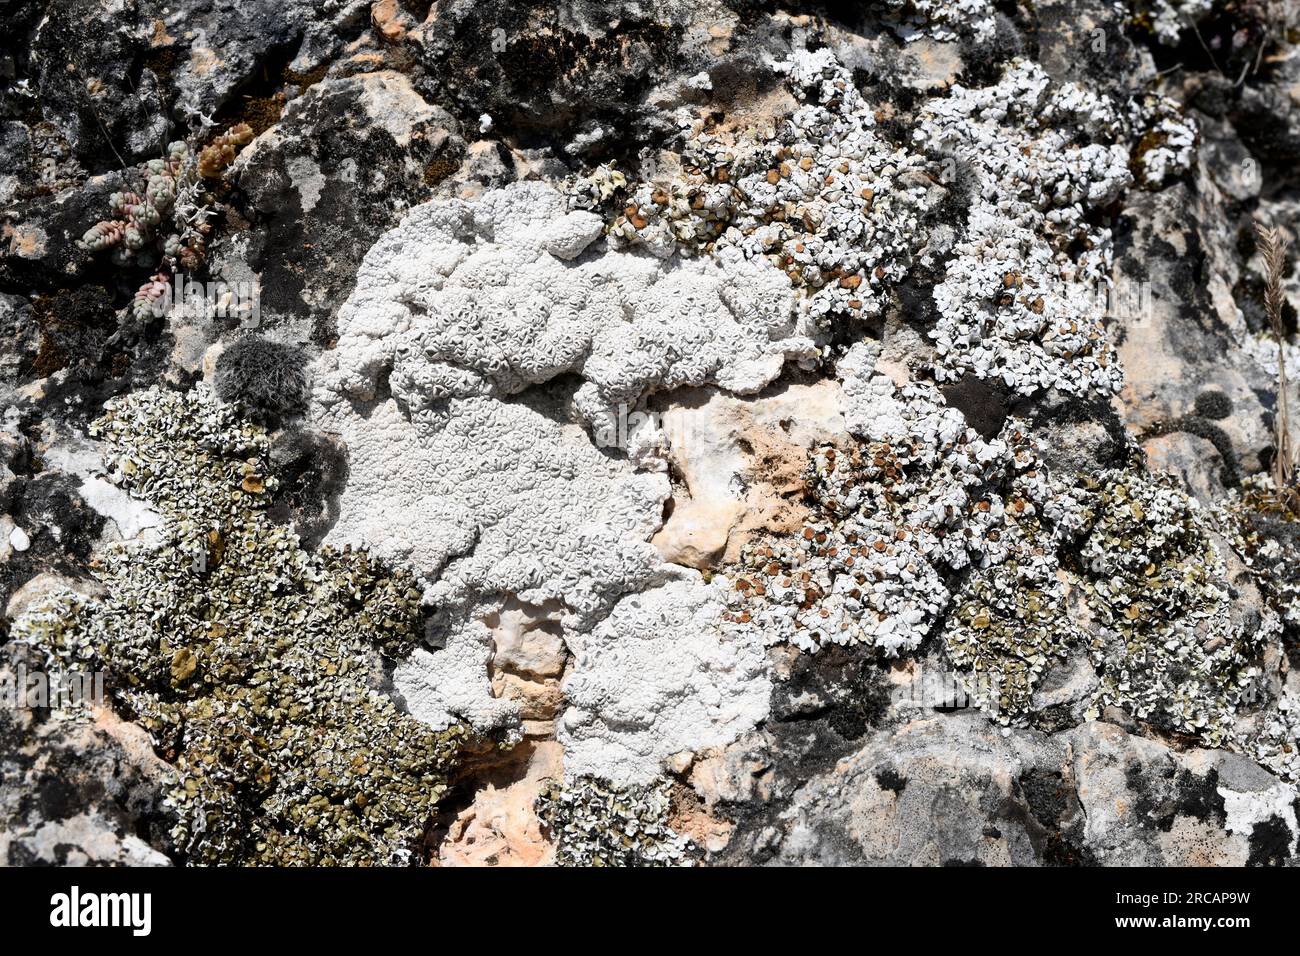 Diploschistes ocellatus (crustose lichen) and Squamarina cartilaginea (foliose). This photo was taken in Cuenca province, Castilla-La Mancha, Spain. Stock Photo